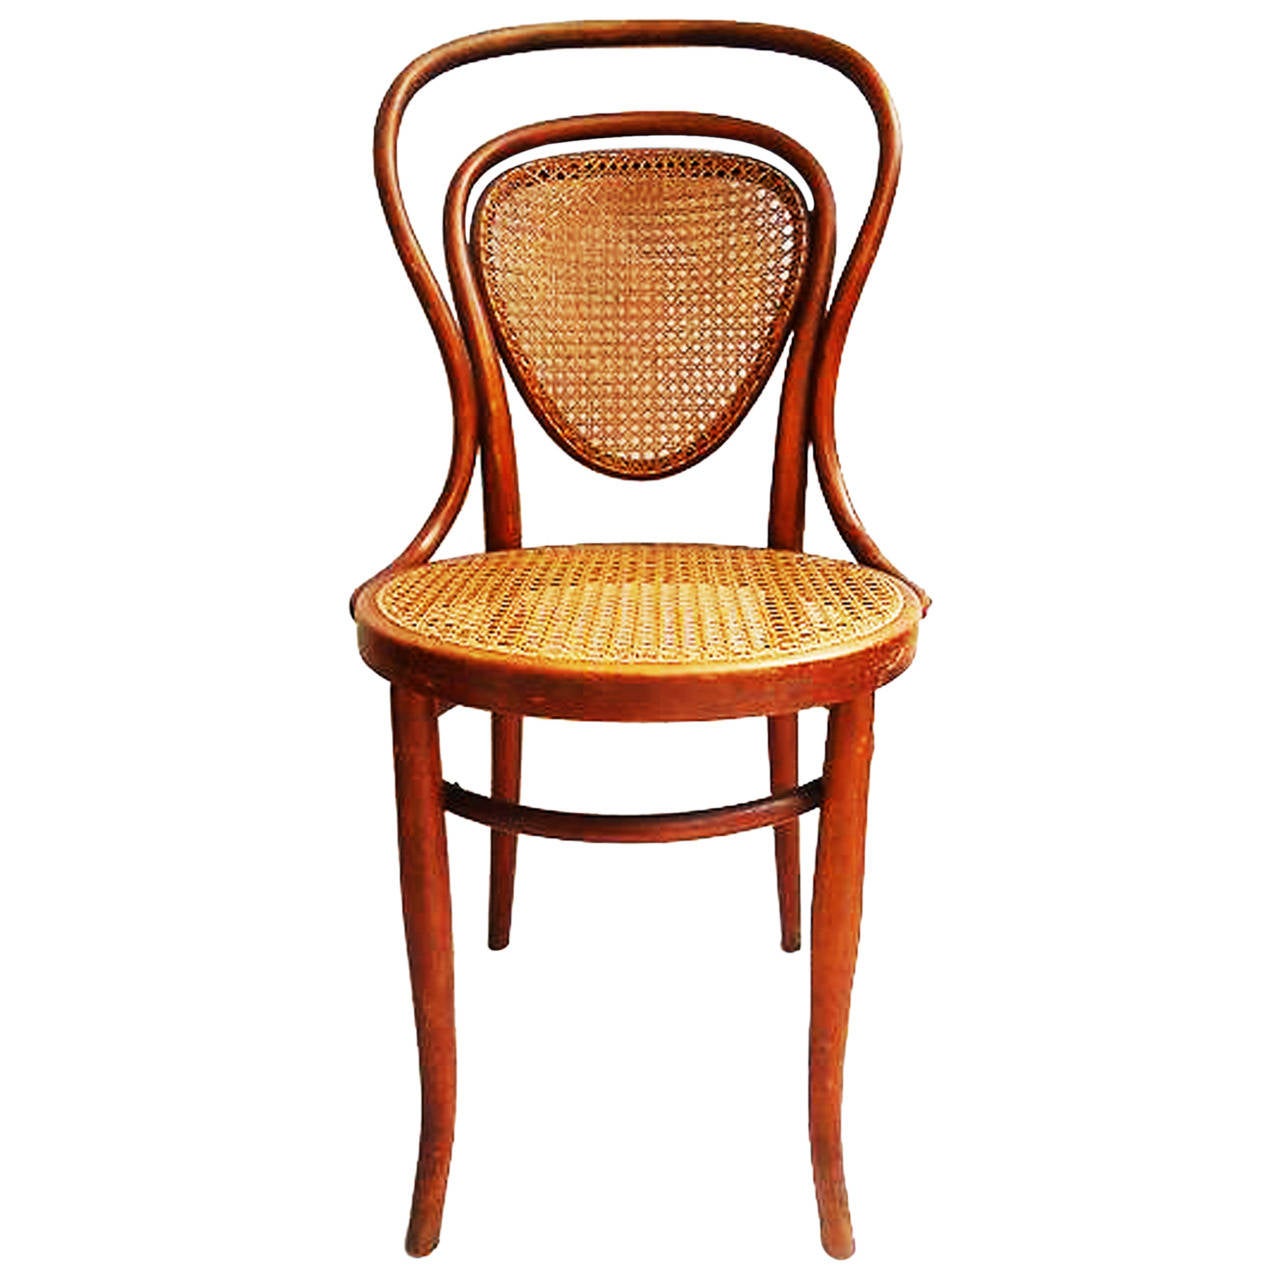 Kohn-Stuhl restauriert